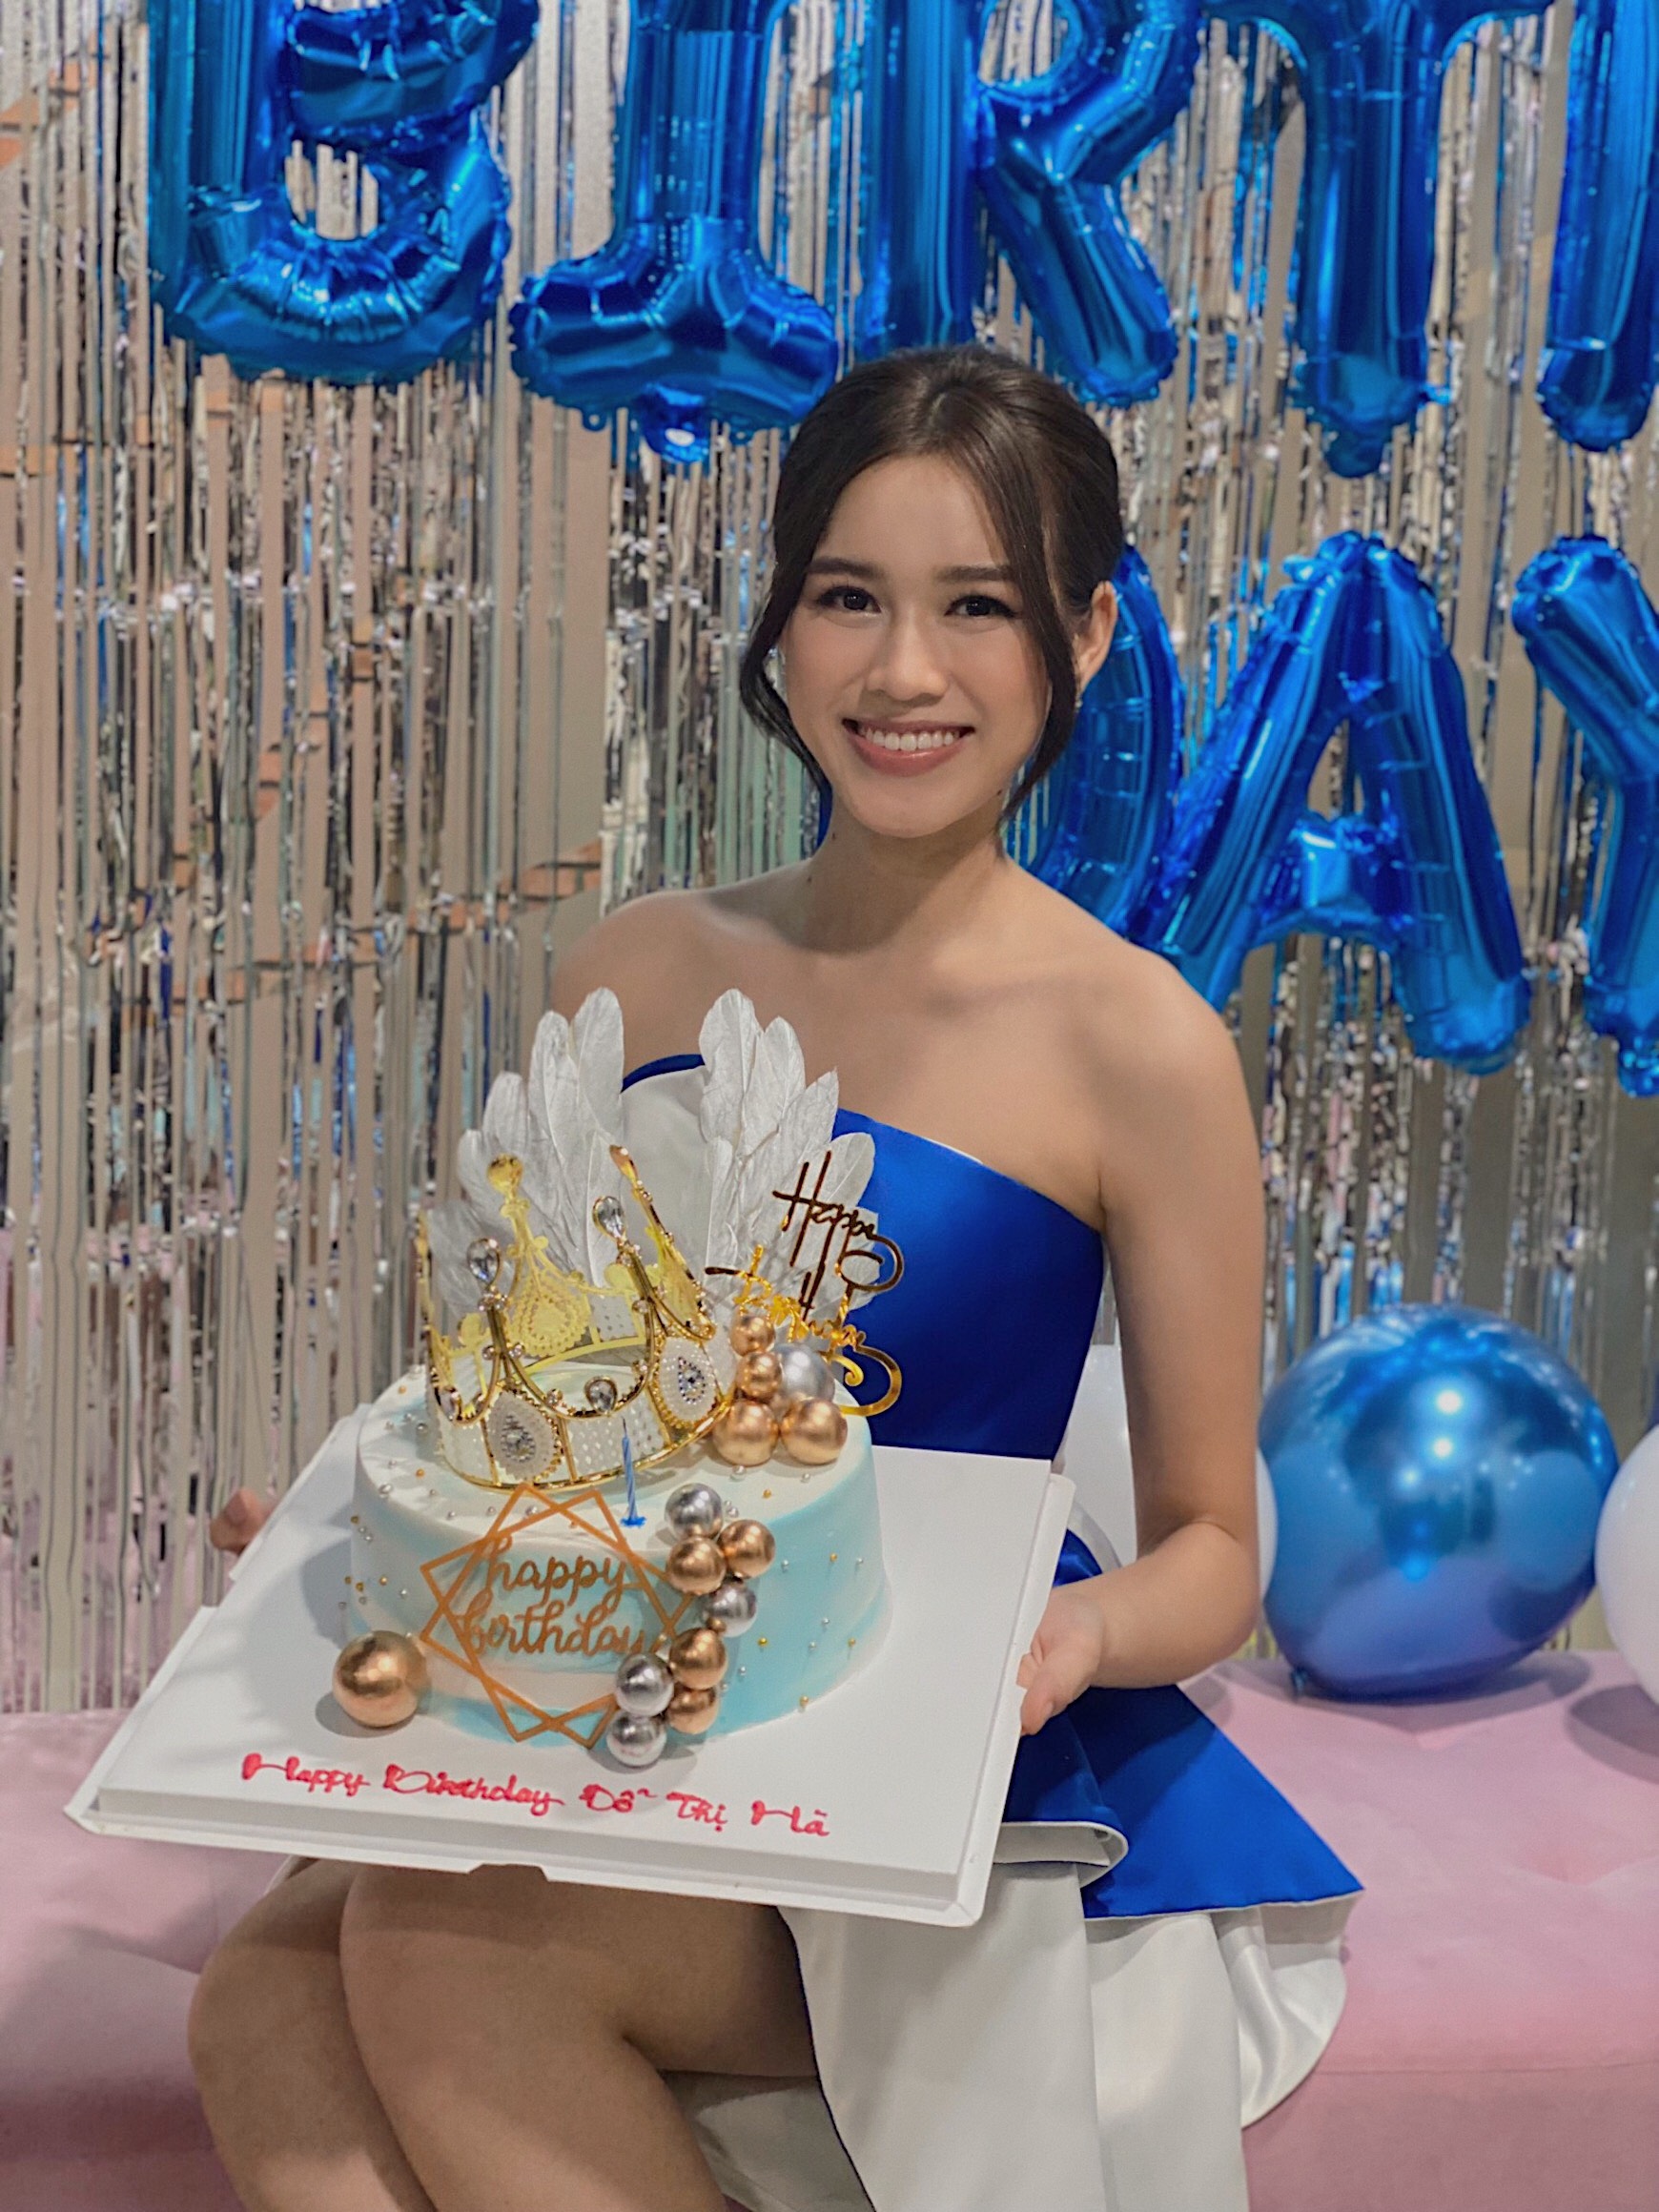 Chi tiết đầy ý nghĩa trên chiếc bánh sinh nhật của Hoa hậu Đỗ Thị Hà